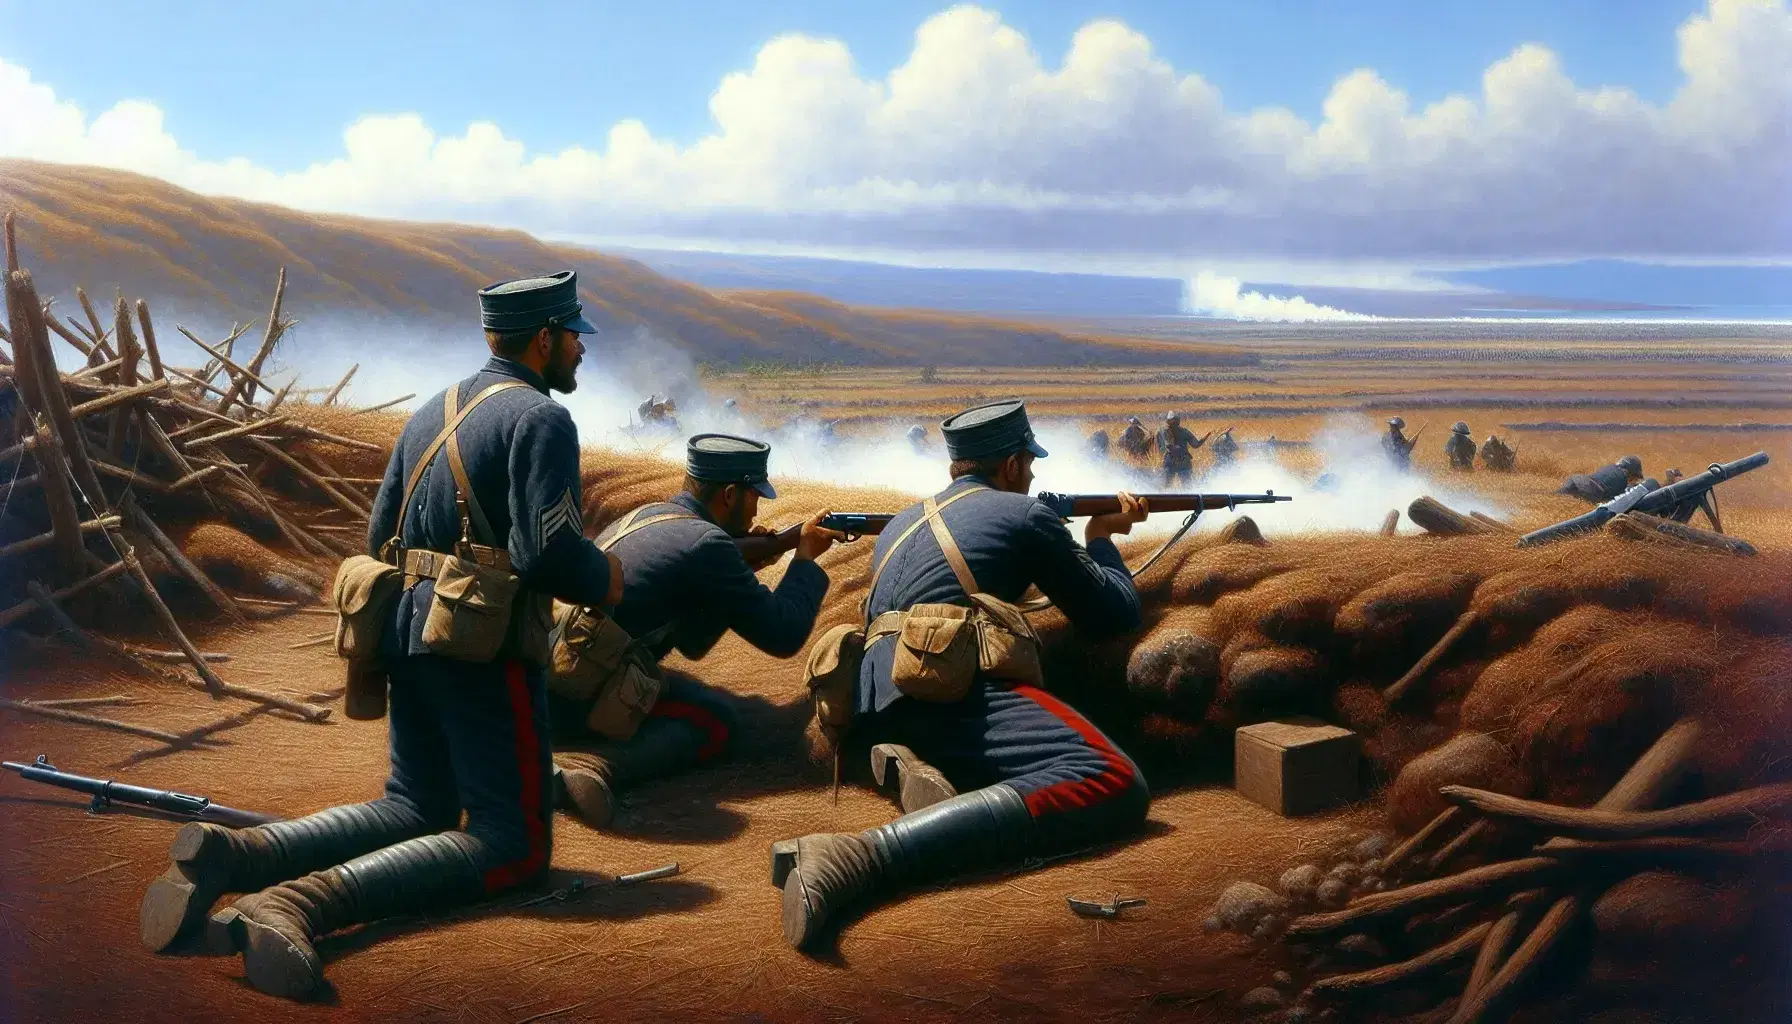 Soldados en uniformes de la Guerra del Pacífico con chaquetas azules y pantalones rojos en un campo de batalla, uno arrodillado con fusil y bayoneta, otros de pie, con humo de combate al fondo y colinas suaves bajo un cielo claro.